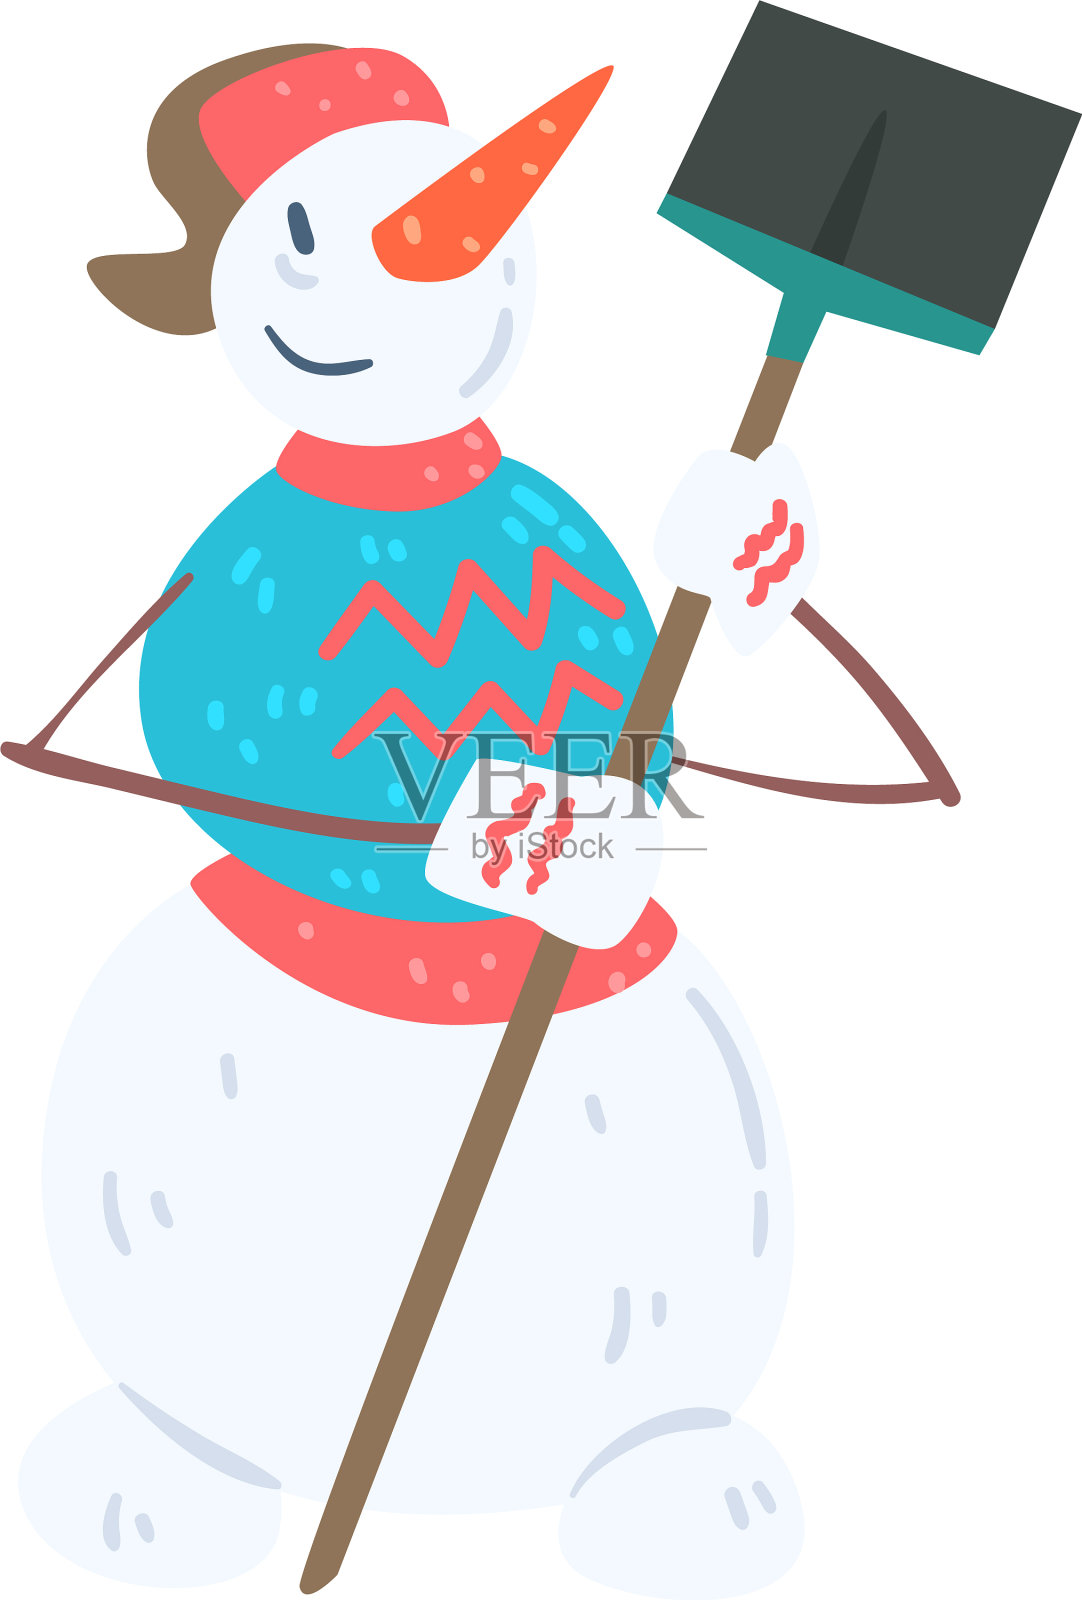 滑稽愉快的雪人人物用铲子设计元素图片